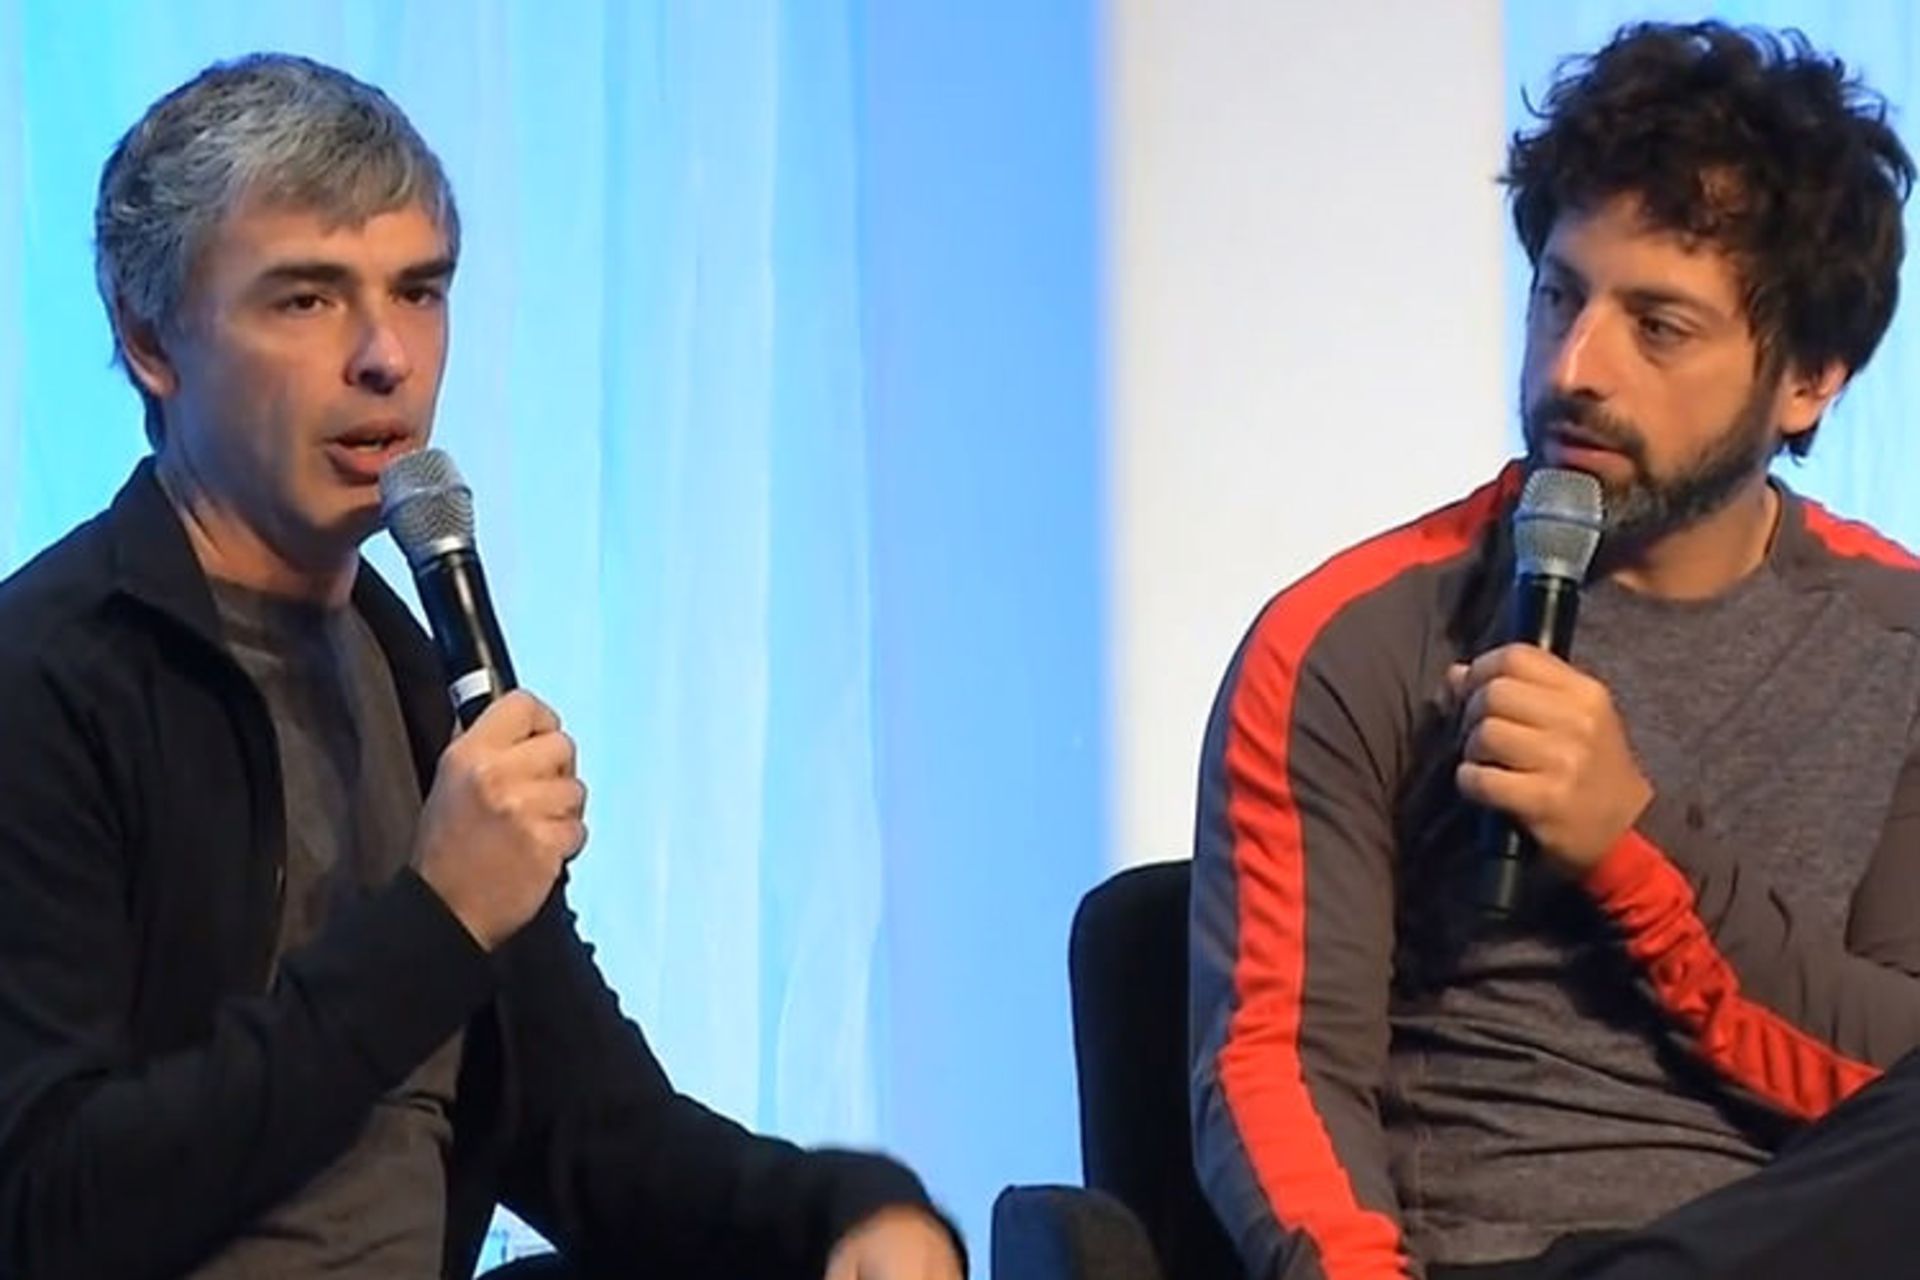 مرجع متخصصين ايران لري پيج (چپ) و سرگئي برين (راست) / Larry Page (Left) and Sergey Brin (Right)